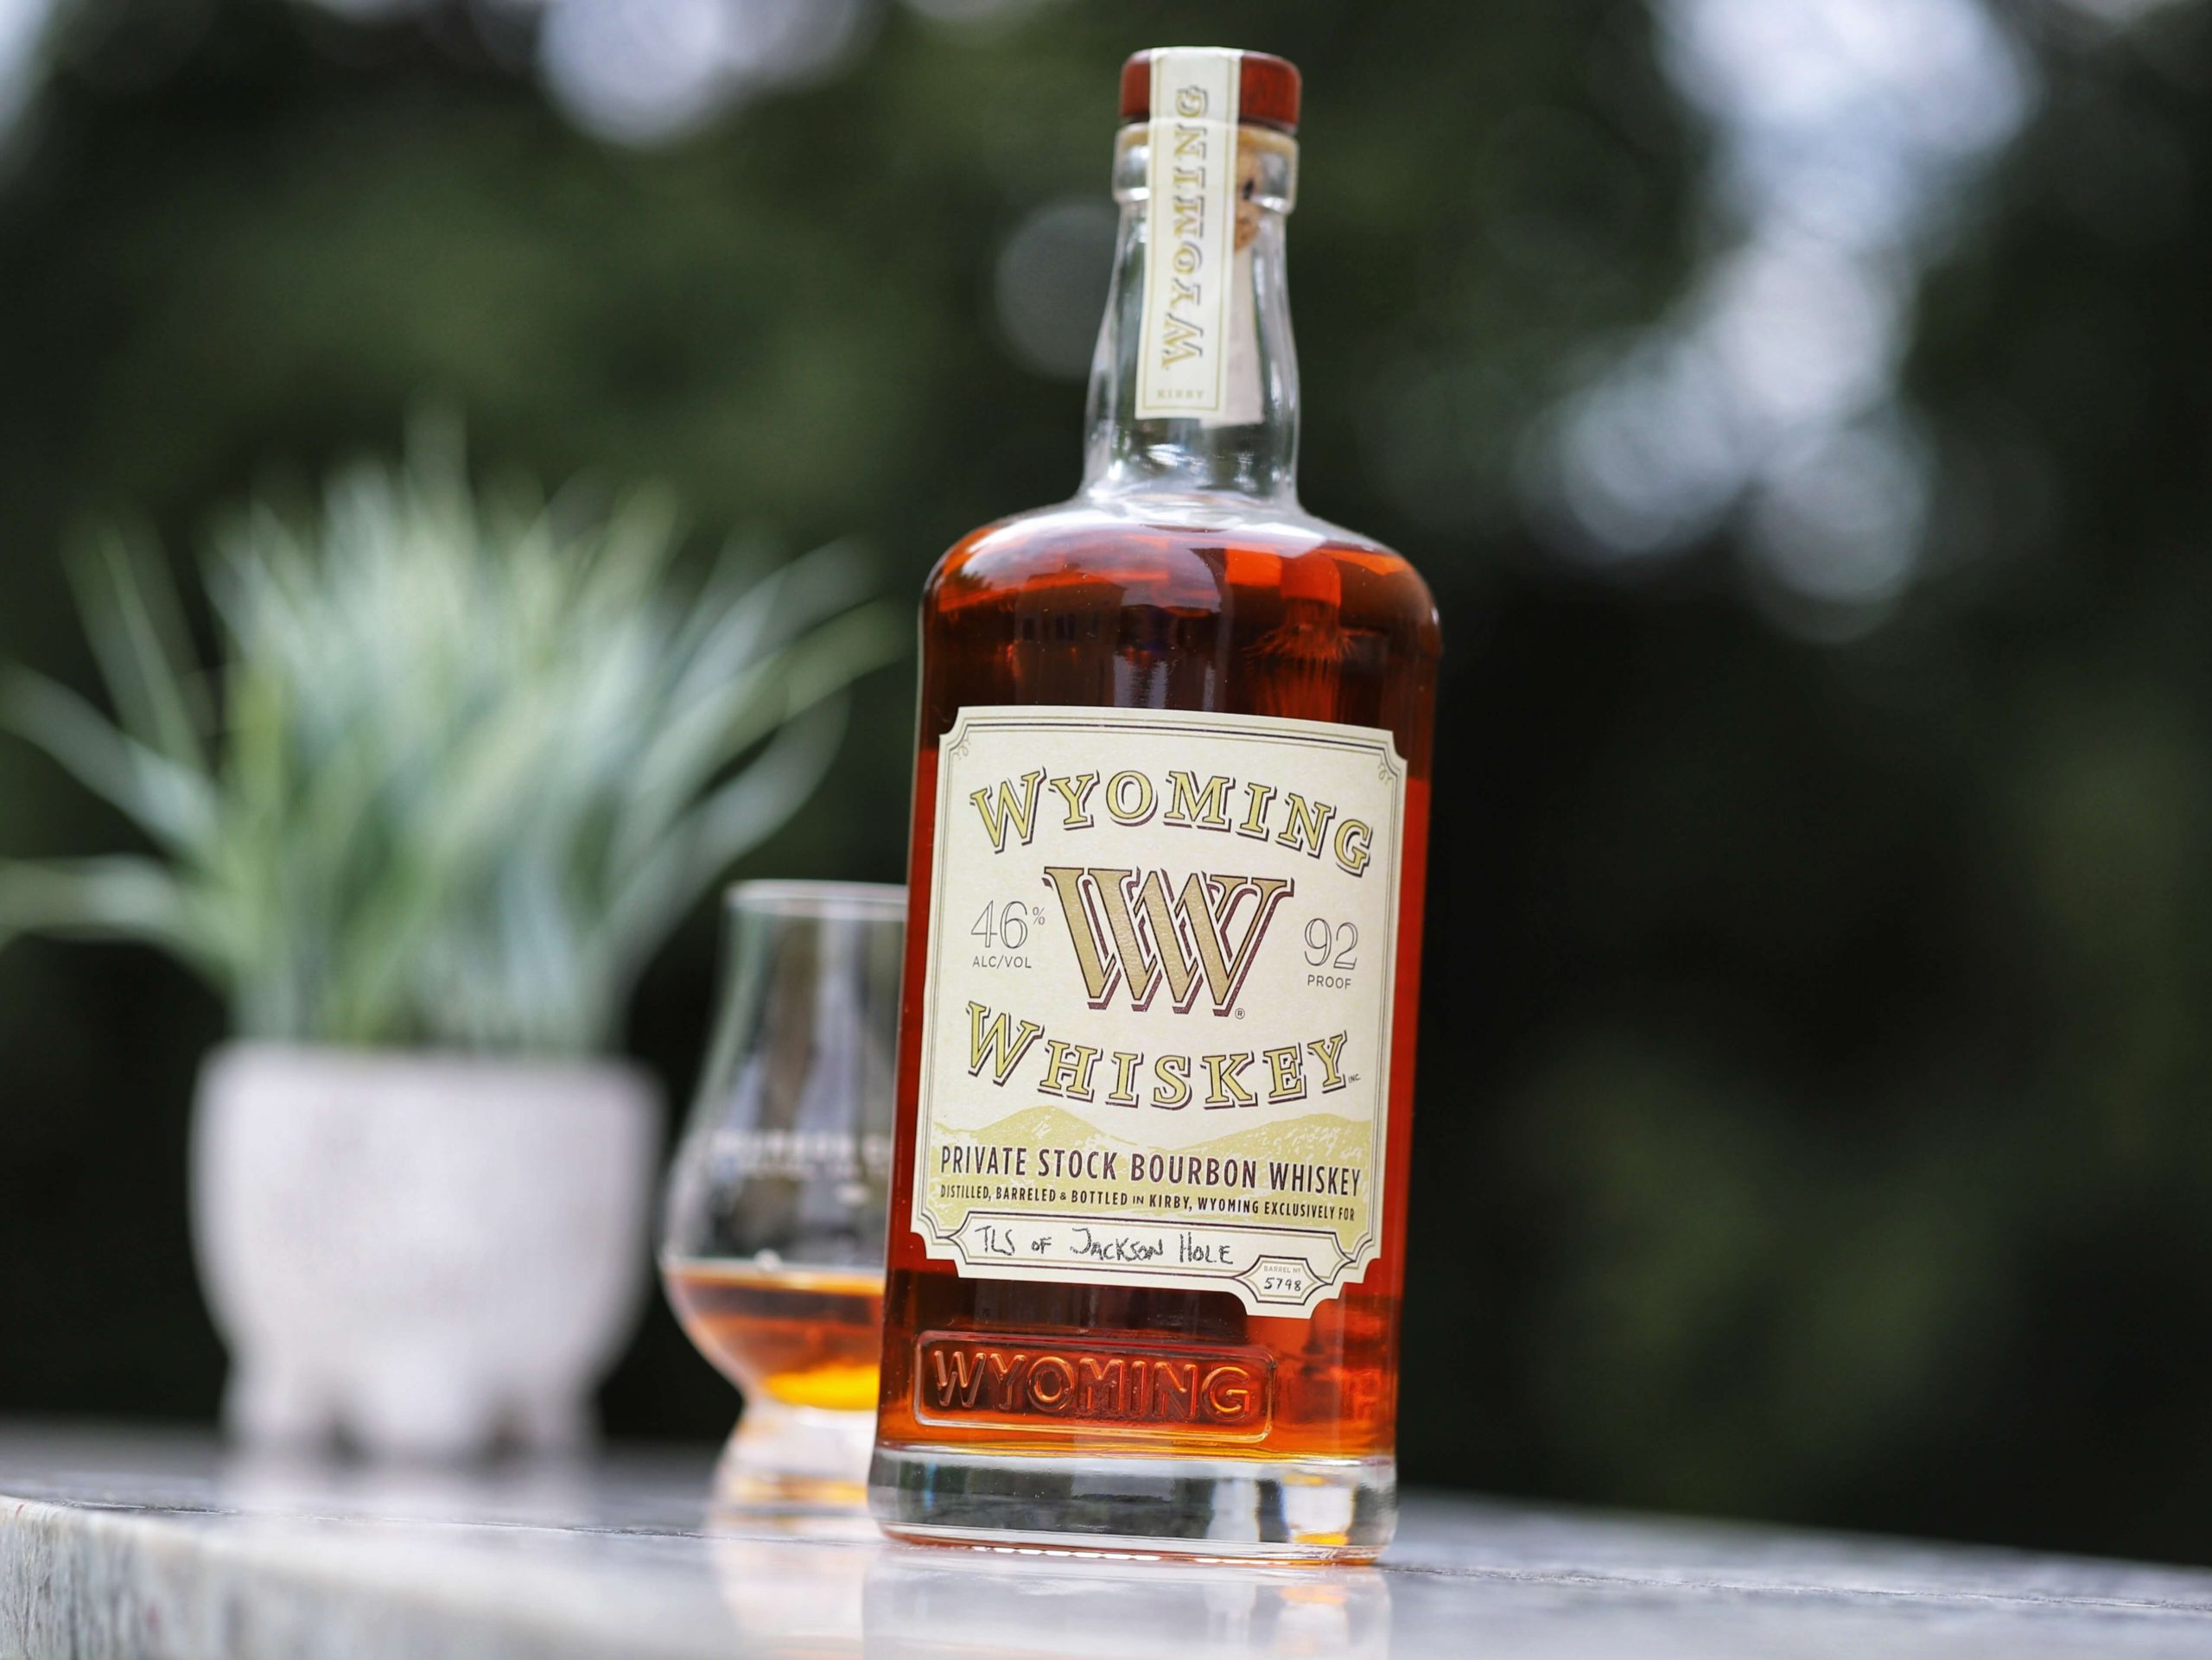 Wyoming Whiskey Private Stock Bourbon Whiskey (TLS of Jackson Hole, Barrel 5798)